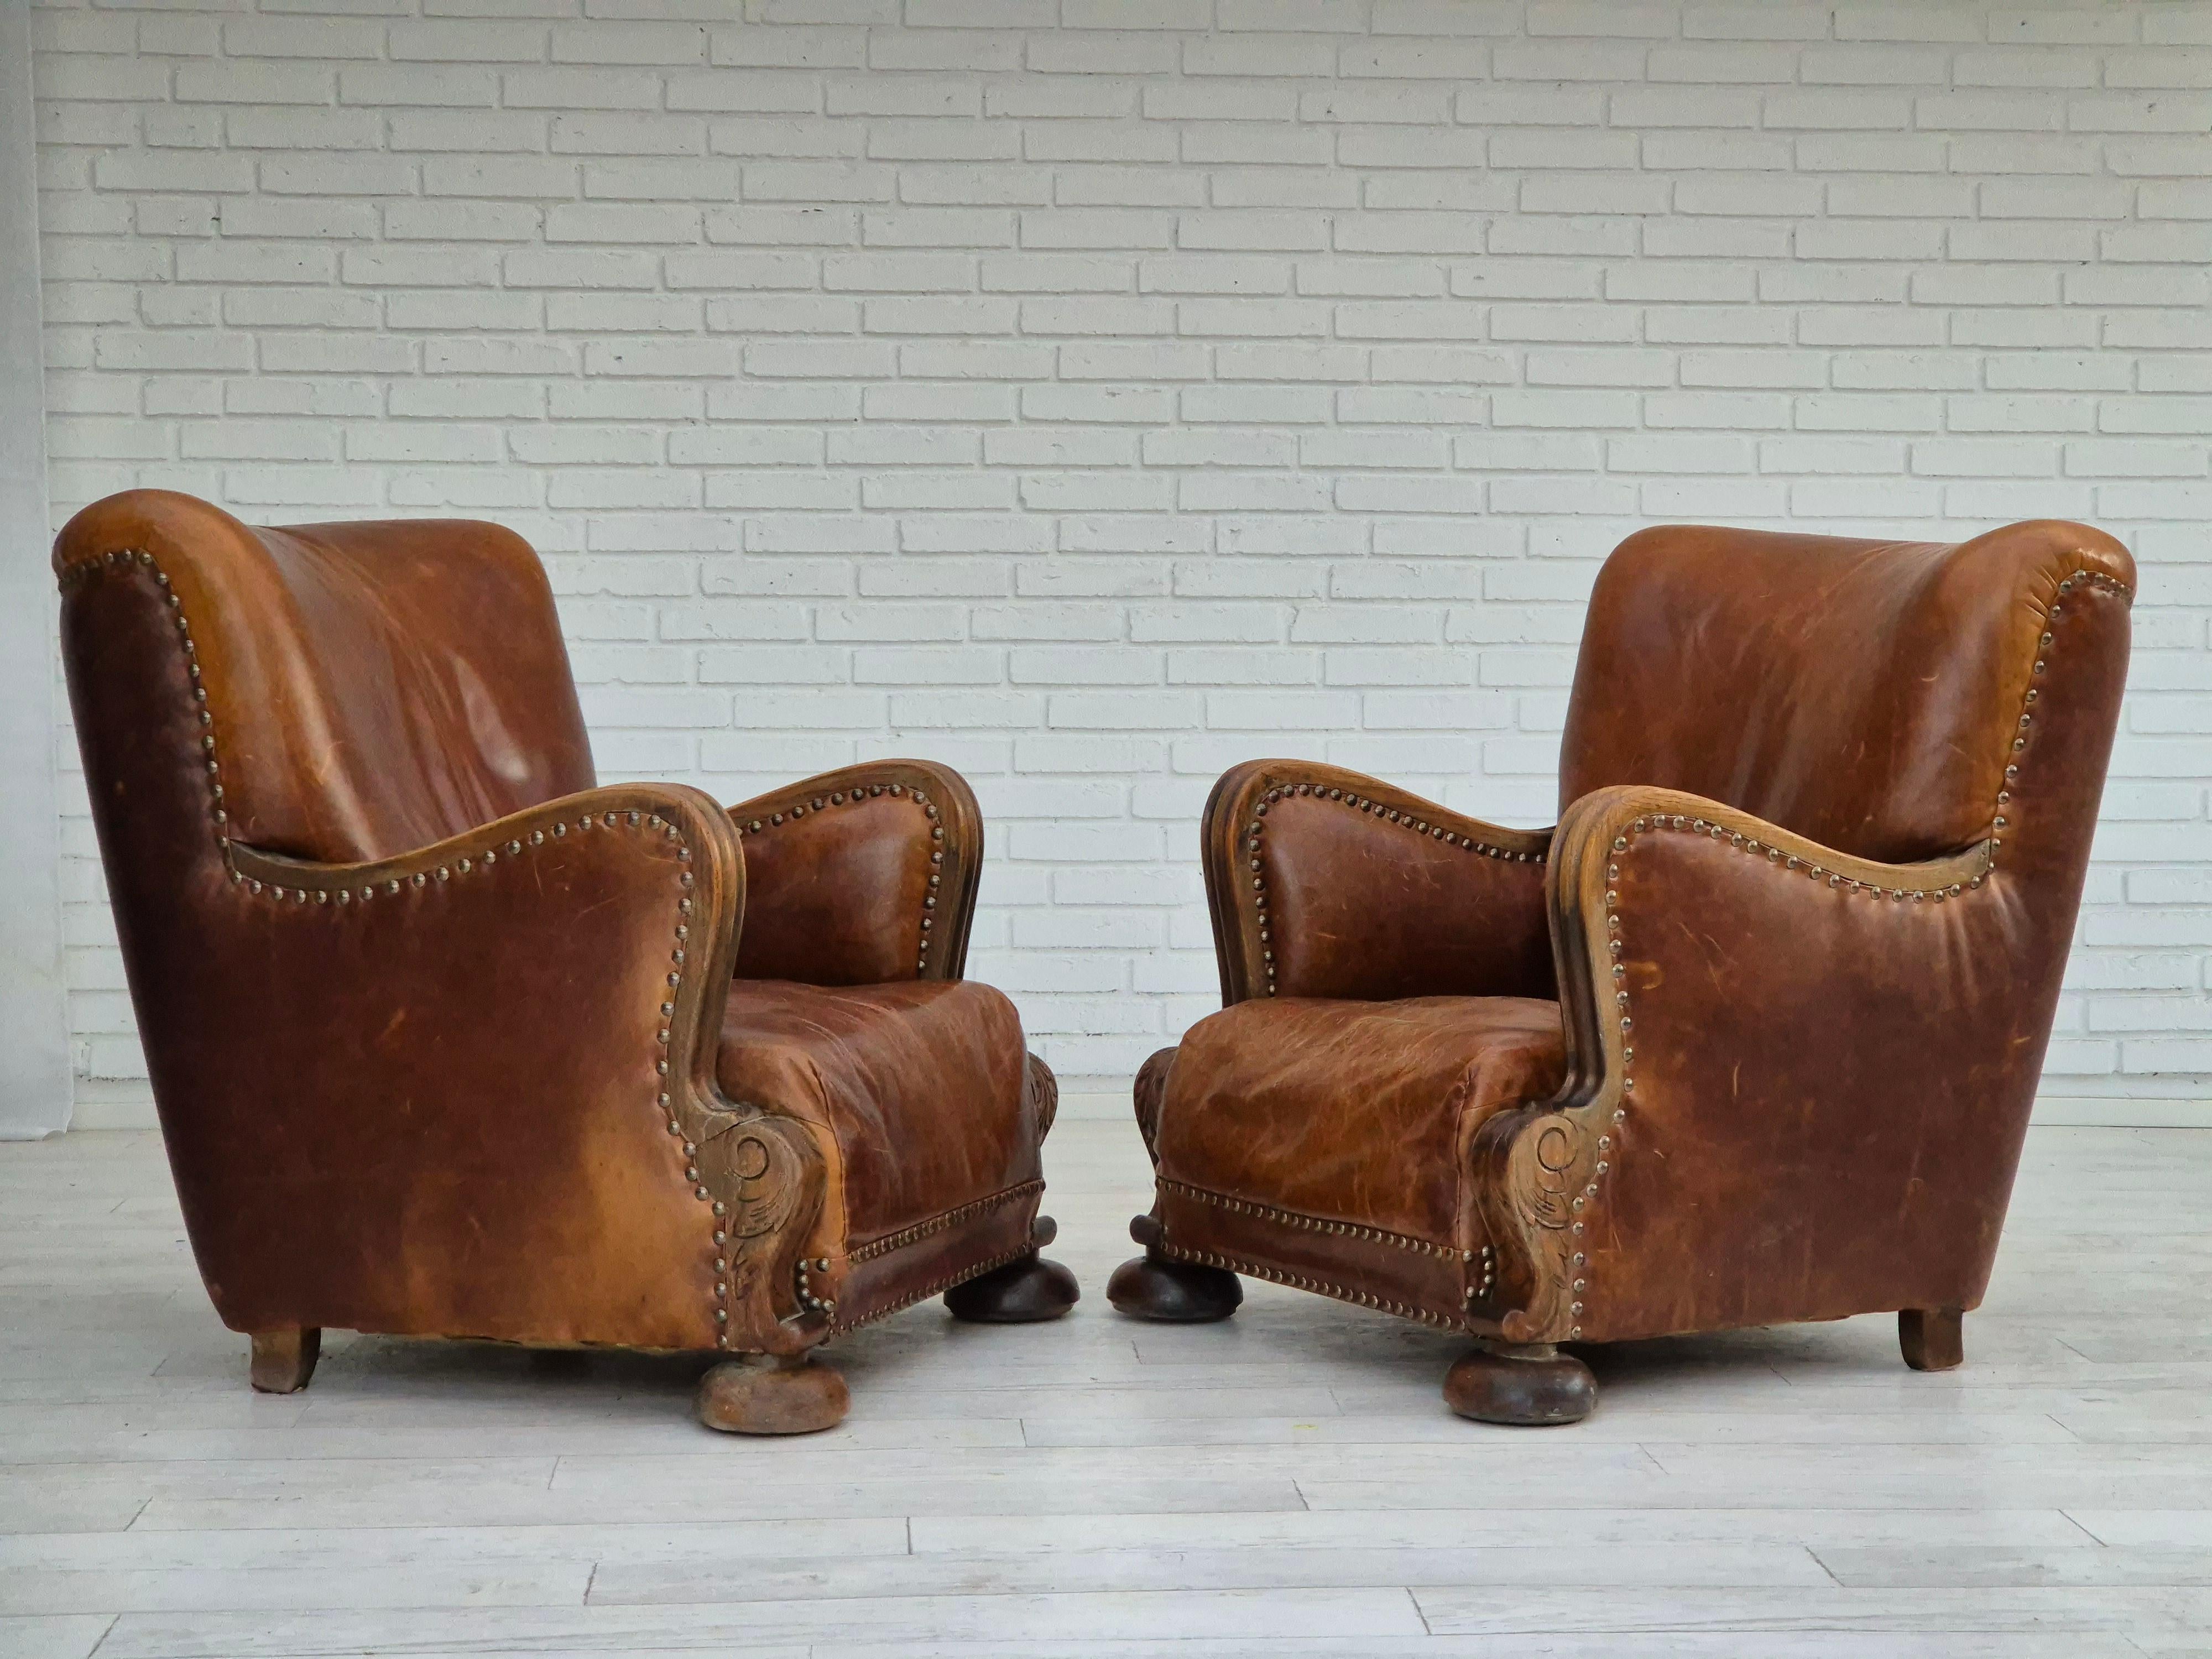 Fauteuil relax danois des années 1950-60 en bon état : pas d'odeurs ni de taches. Cuir brun patiné, pieds et accoudoirs en bois de chêne. Ressorts en laiton dans le siège. Fabriqué par un fabricant de meubles danois dans les années 1950-60.